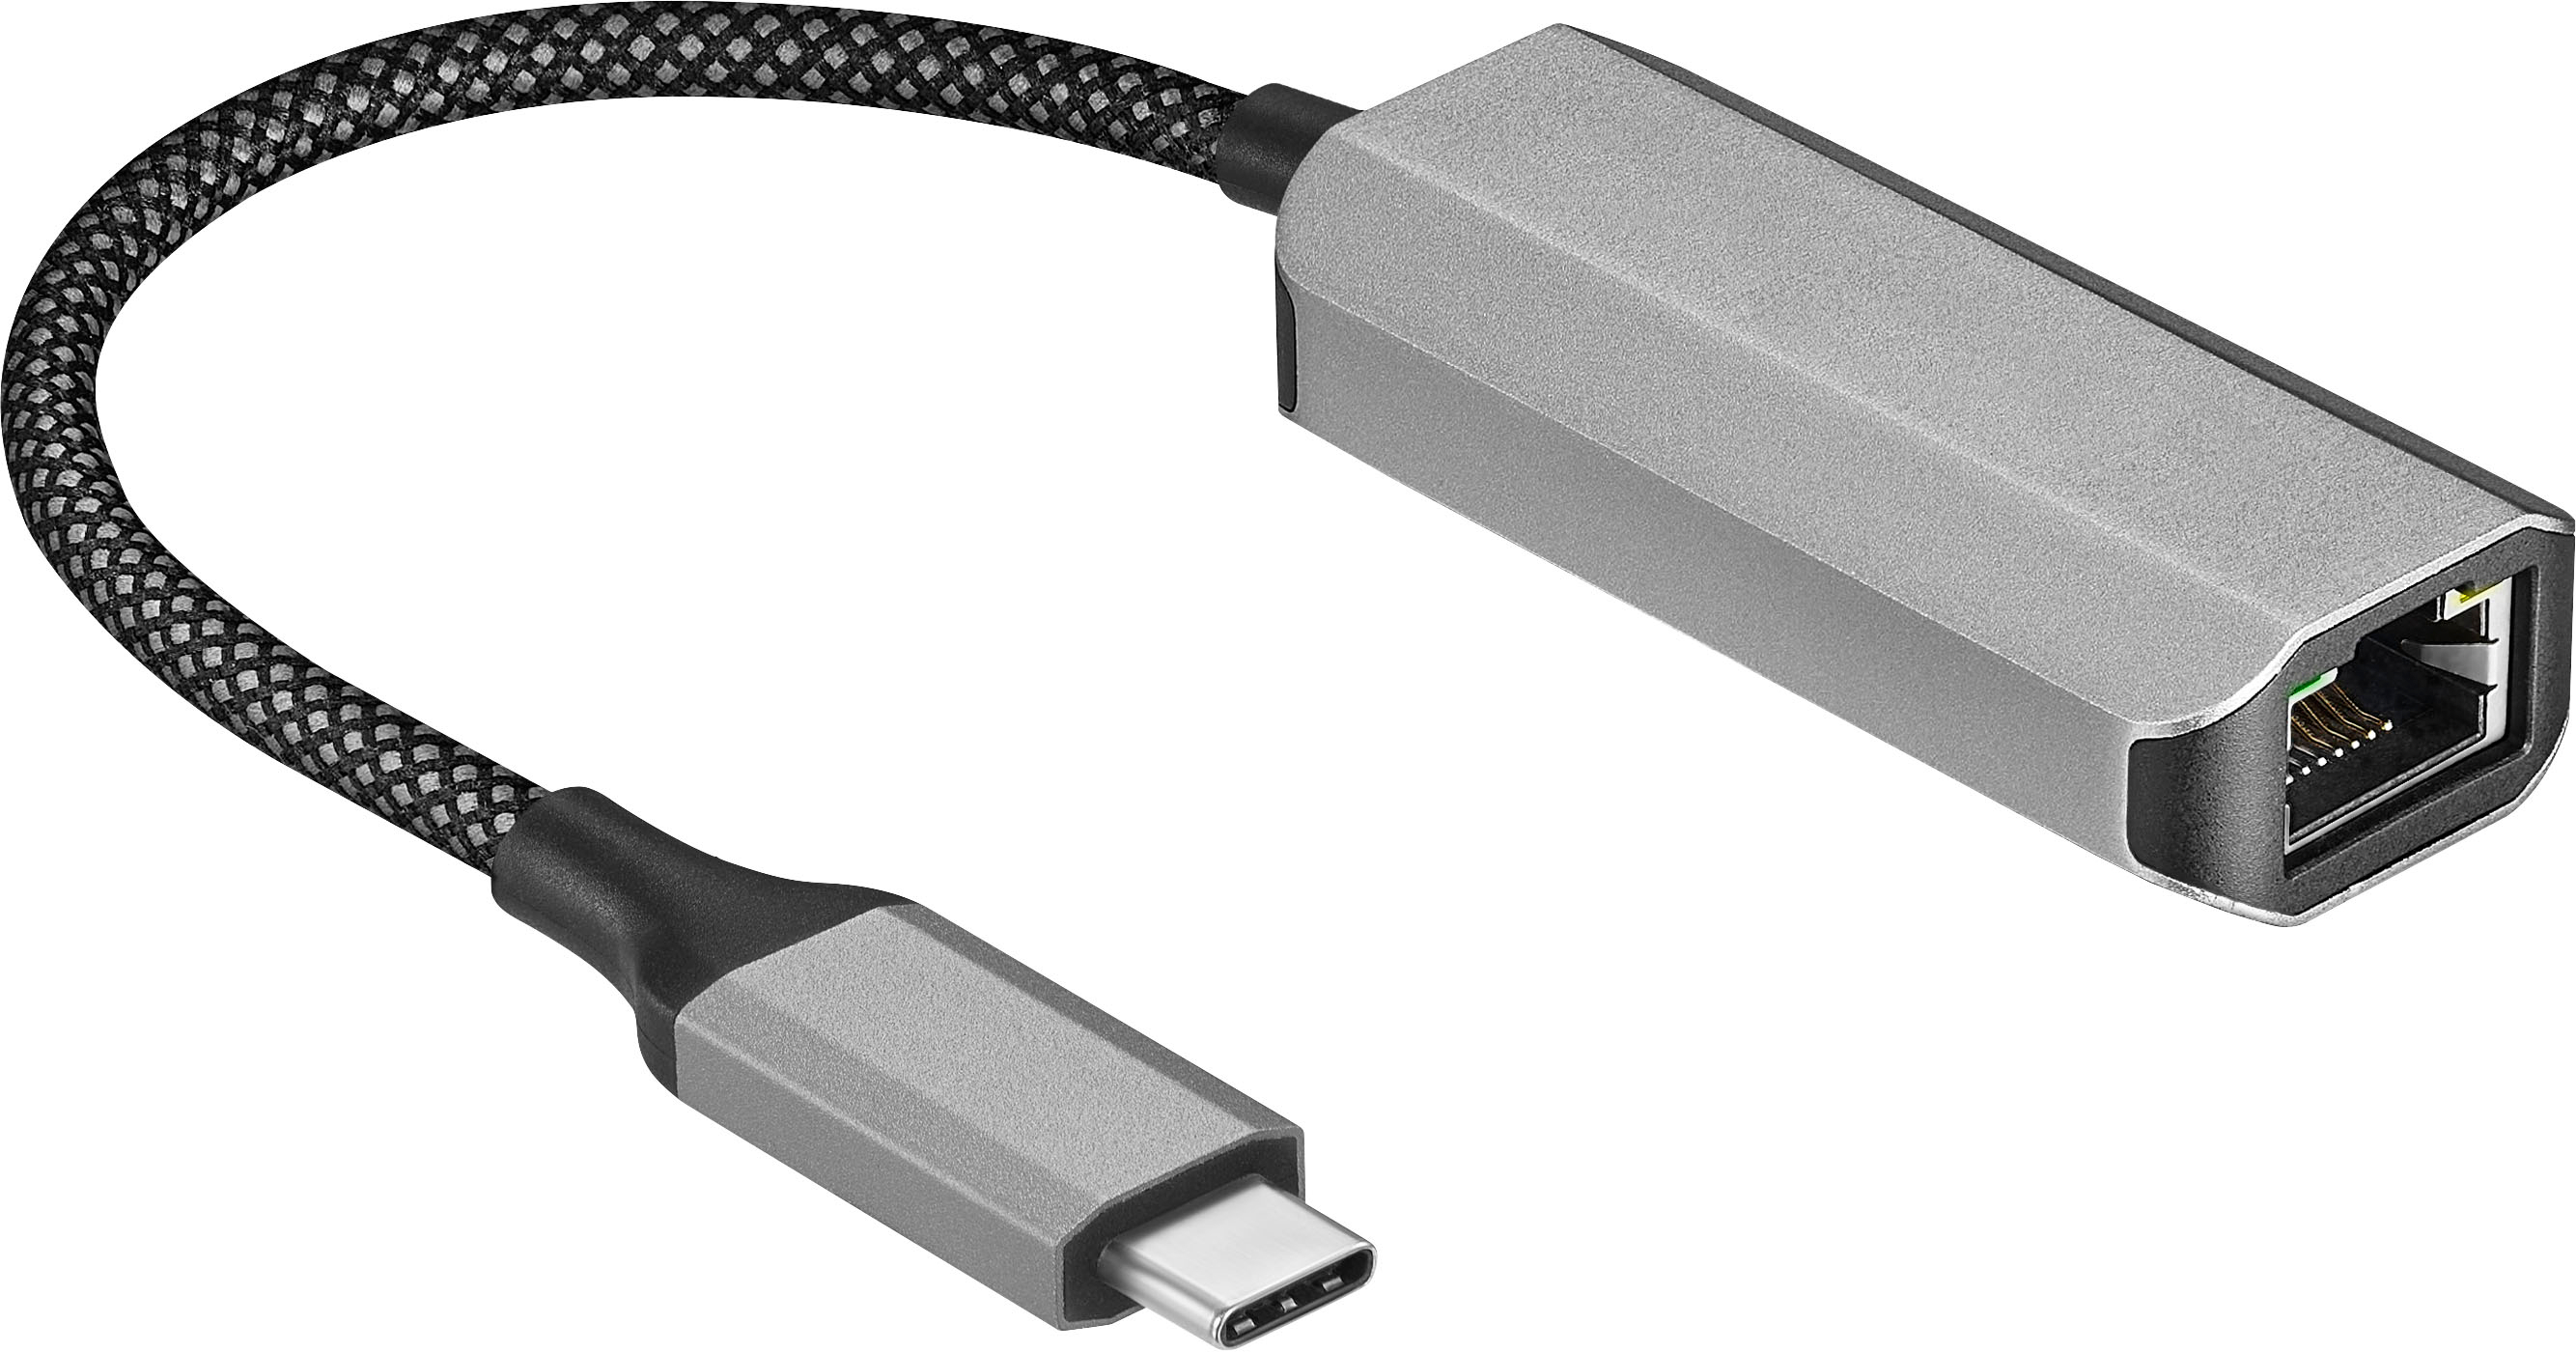  Belkertech Ethernet Adapter, USB Network Adapter